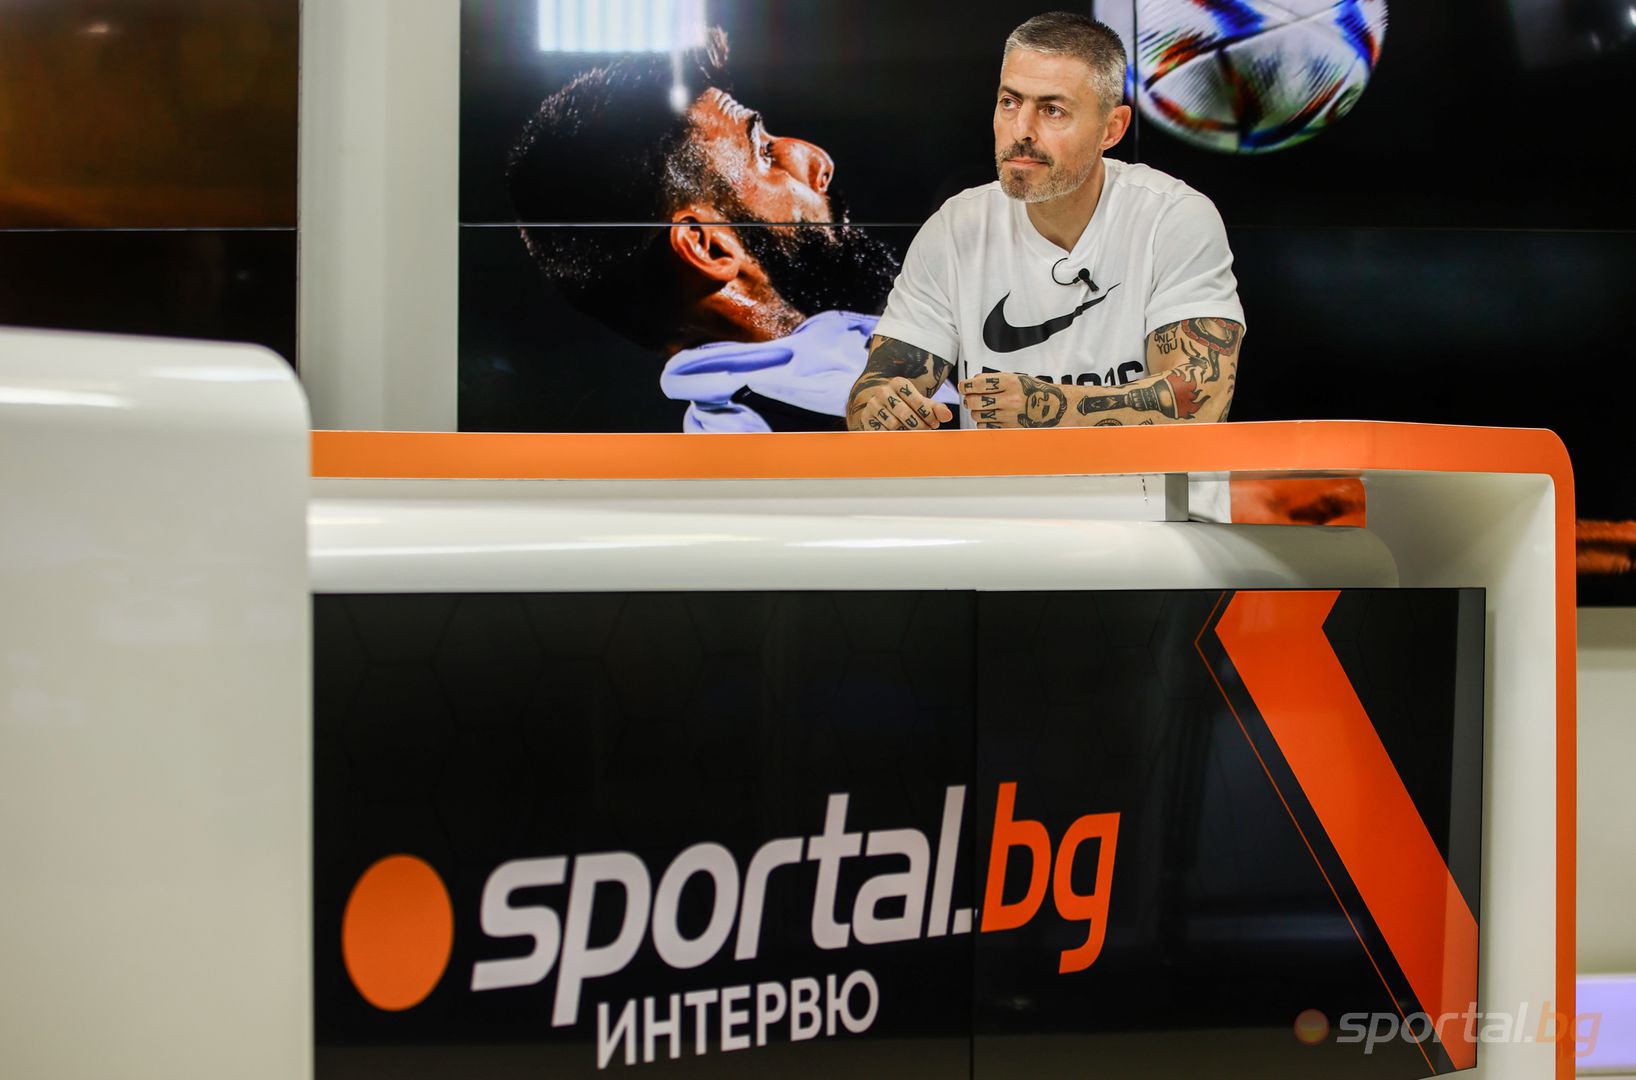  Интервюто на Sportal.bg с посетител Лъчезар Димитров 